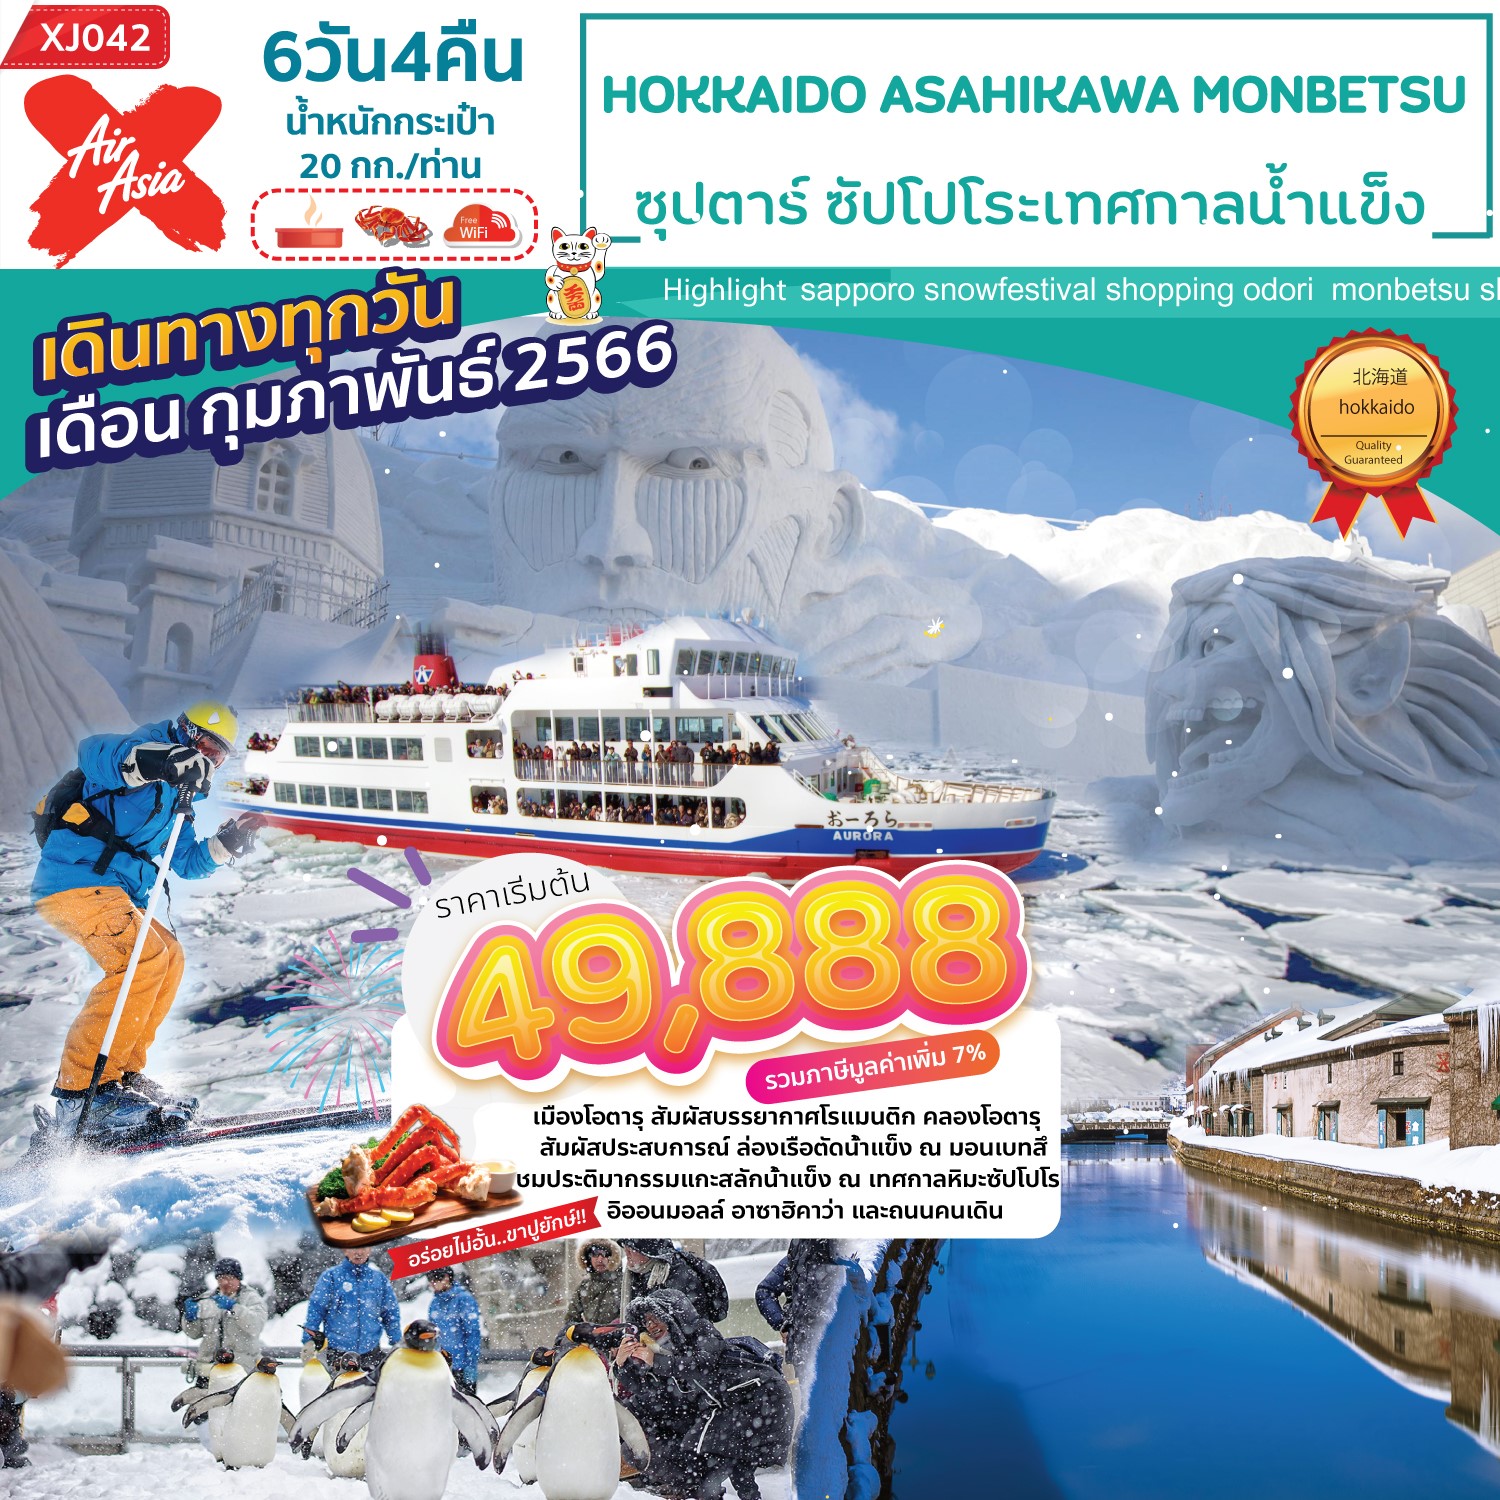 ทัวร์ญี่ปุ่น ฮอกไกโด เทศกาลหิมะซัปโปโร 2023 ล่องเรือตัดน้ำแข็ง สวนสัตว์อาซาฮิยามะ 6 วัน 4 คืน